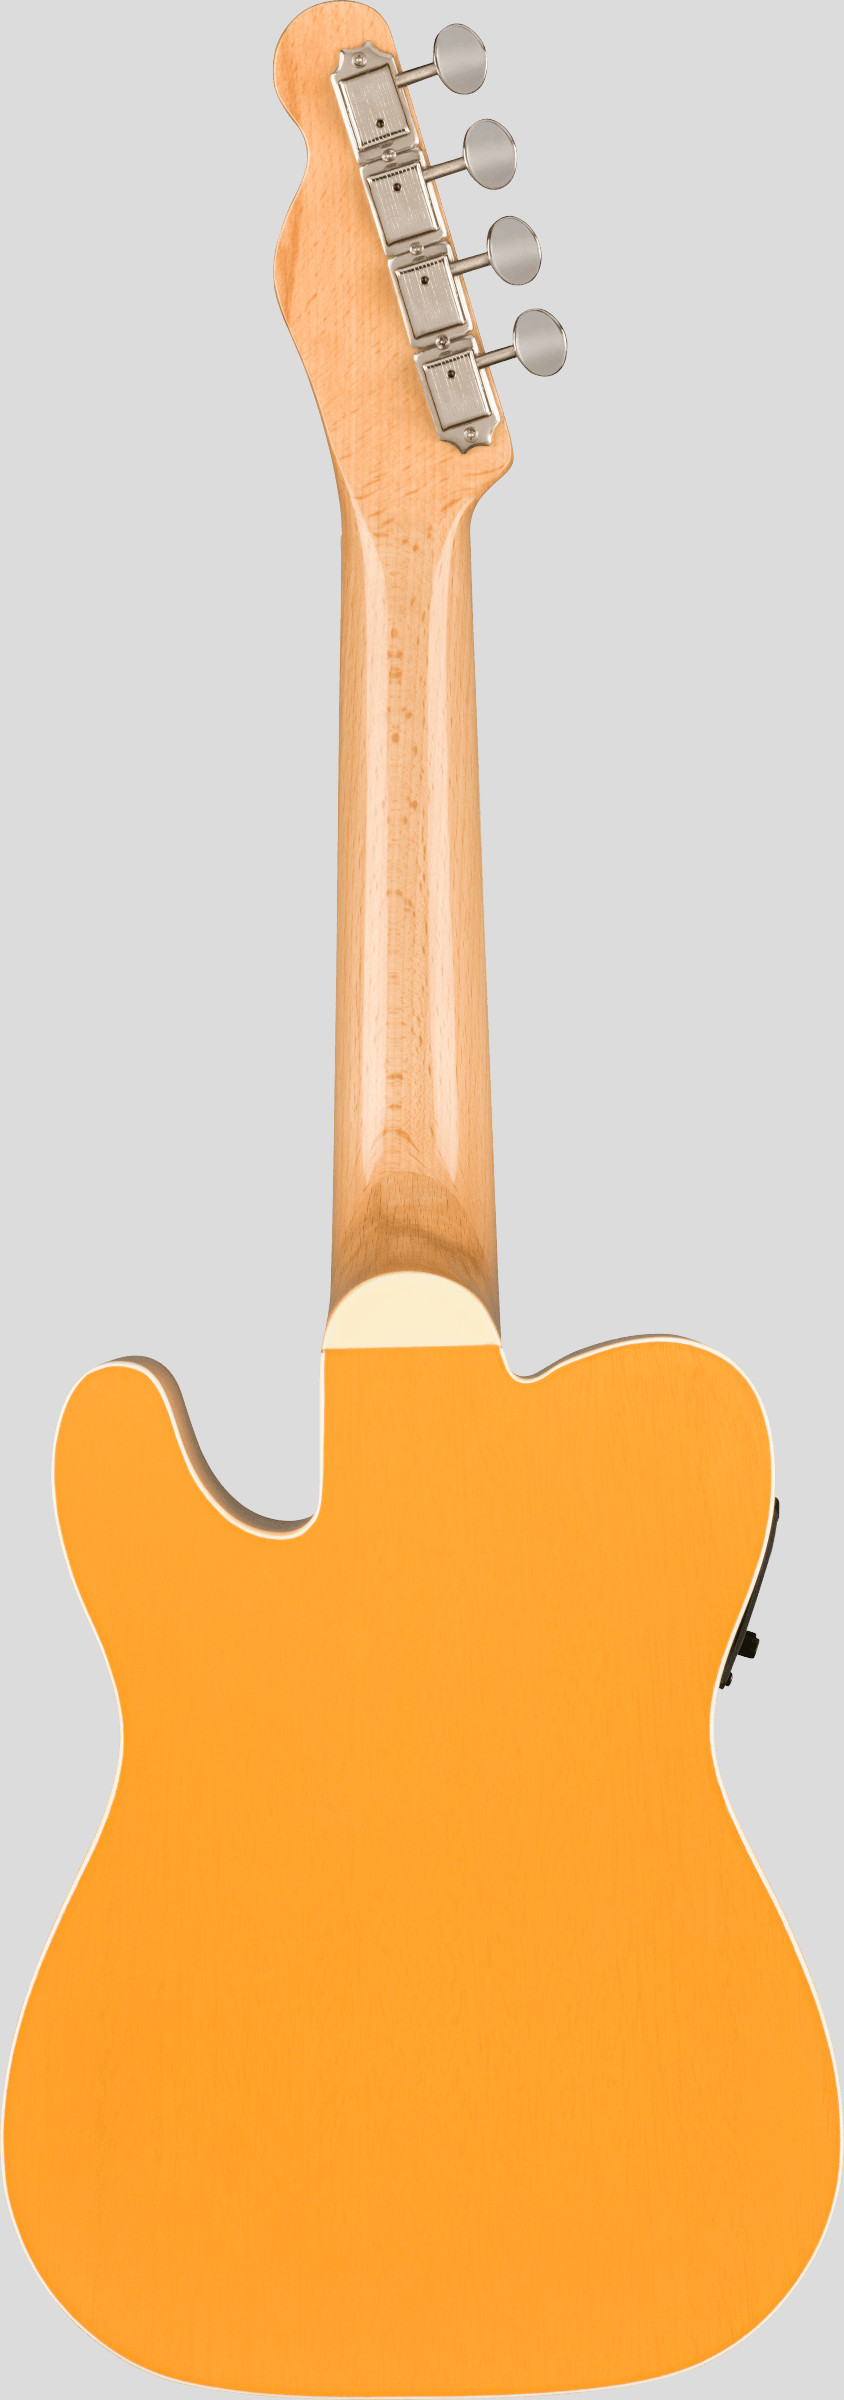 Fender Fullerton Telecaster Concert Ukulele Butterscotch Blonde 2